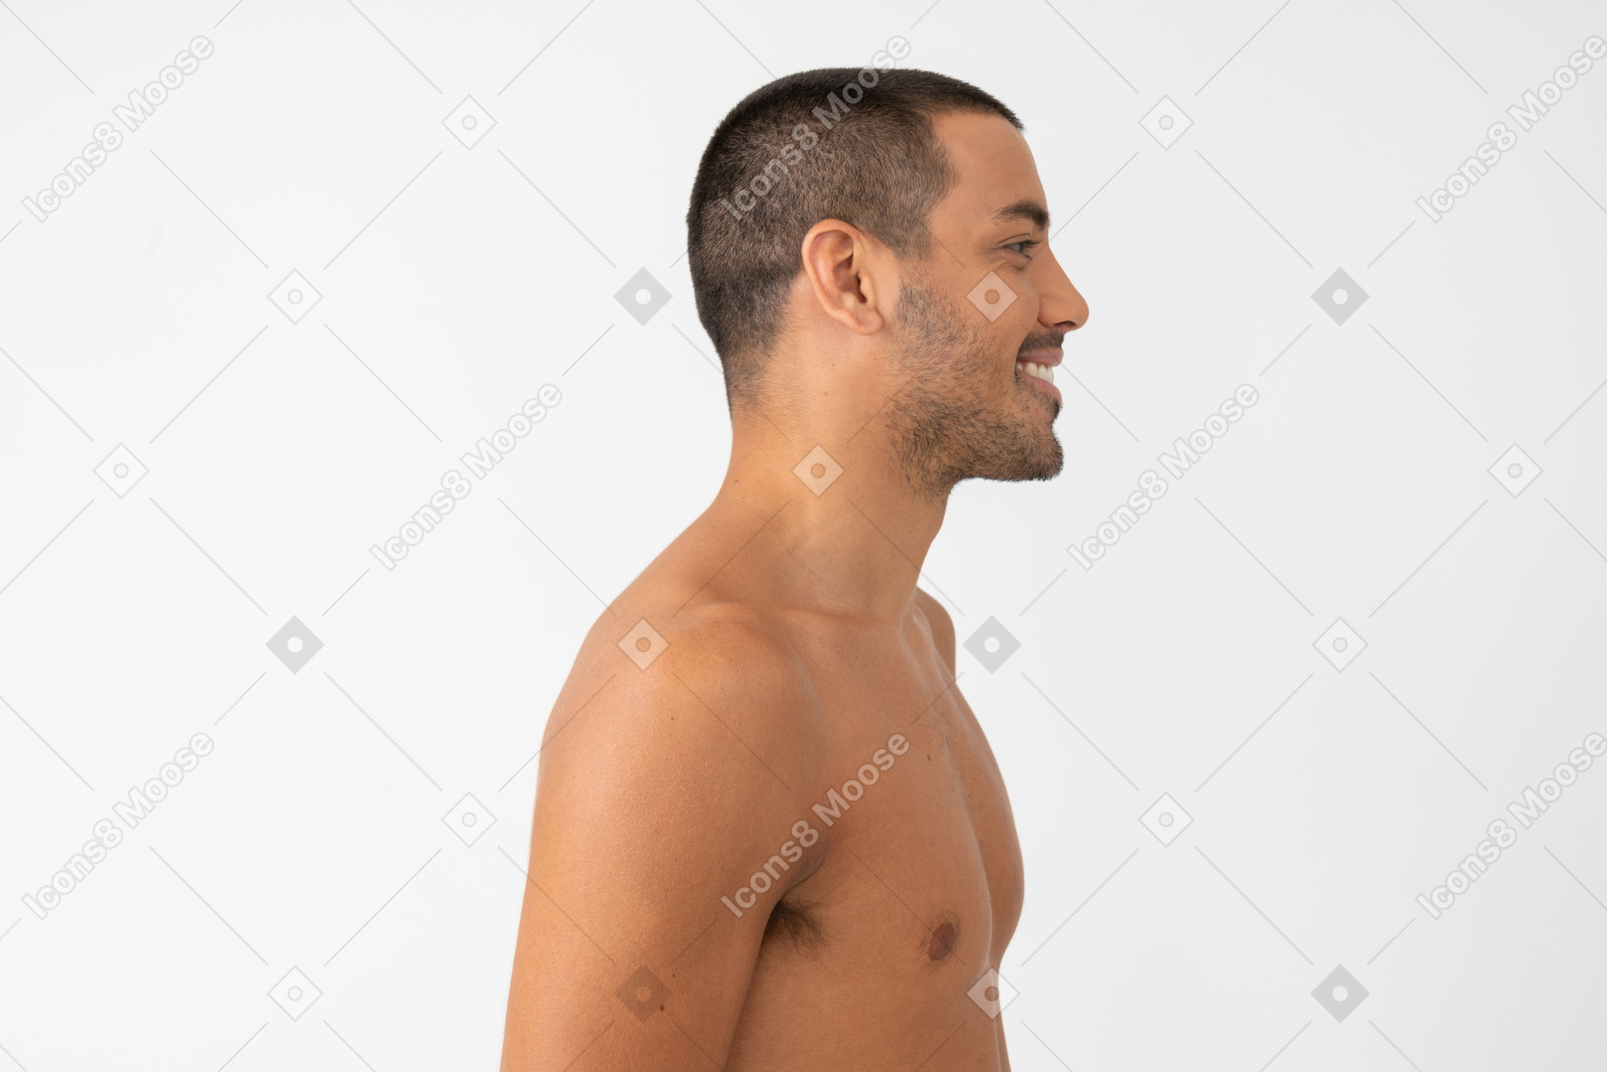 Barechested junger mann mit einem lächeln auf seinem gesicht im profil stehen